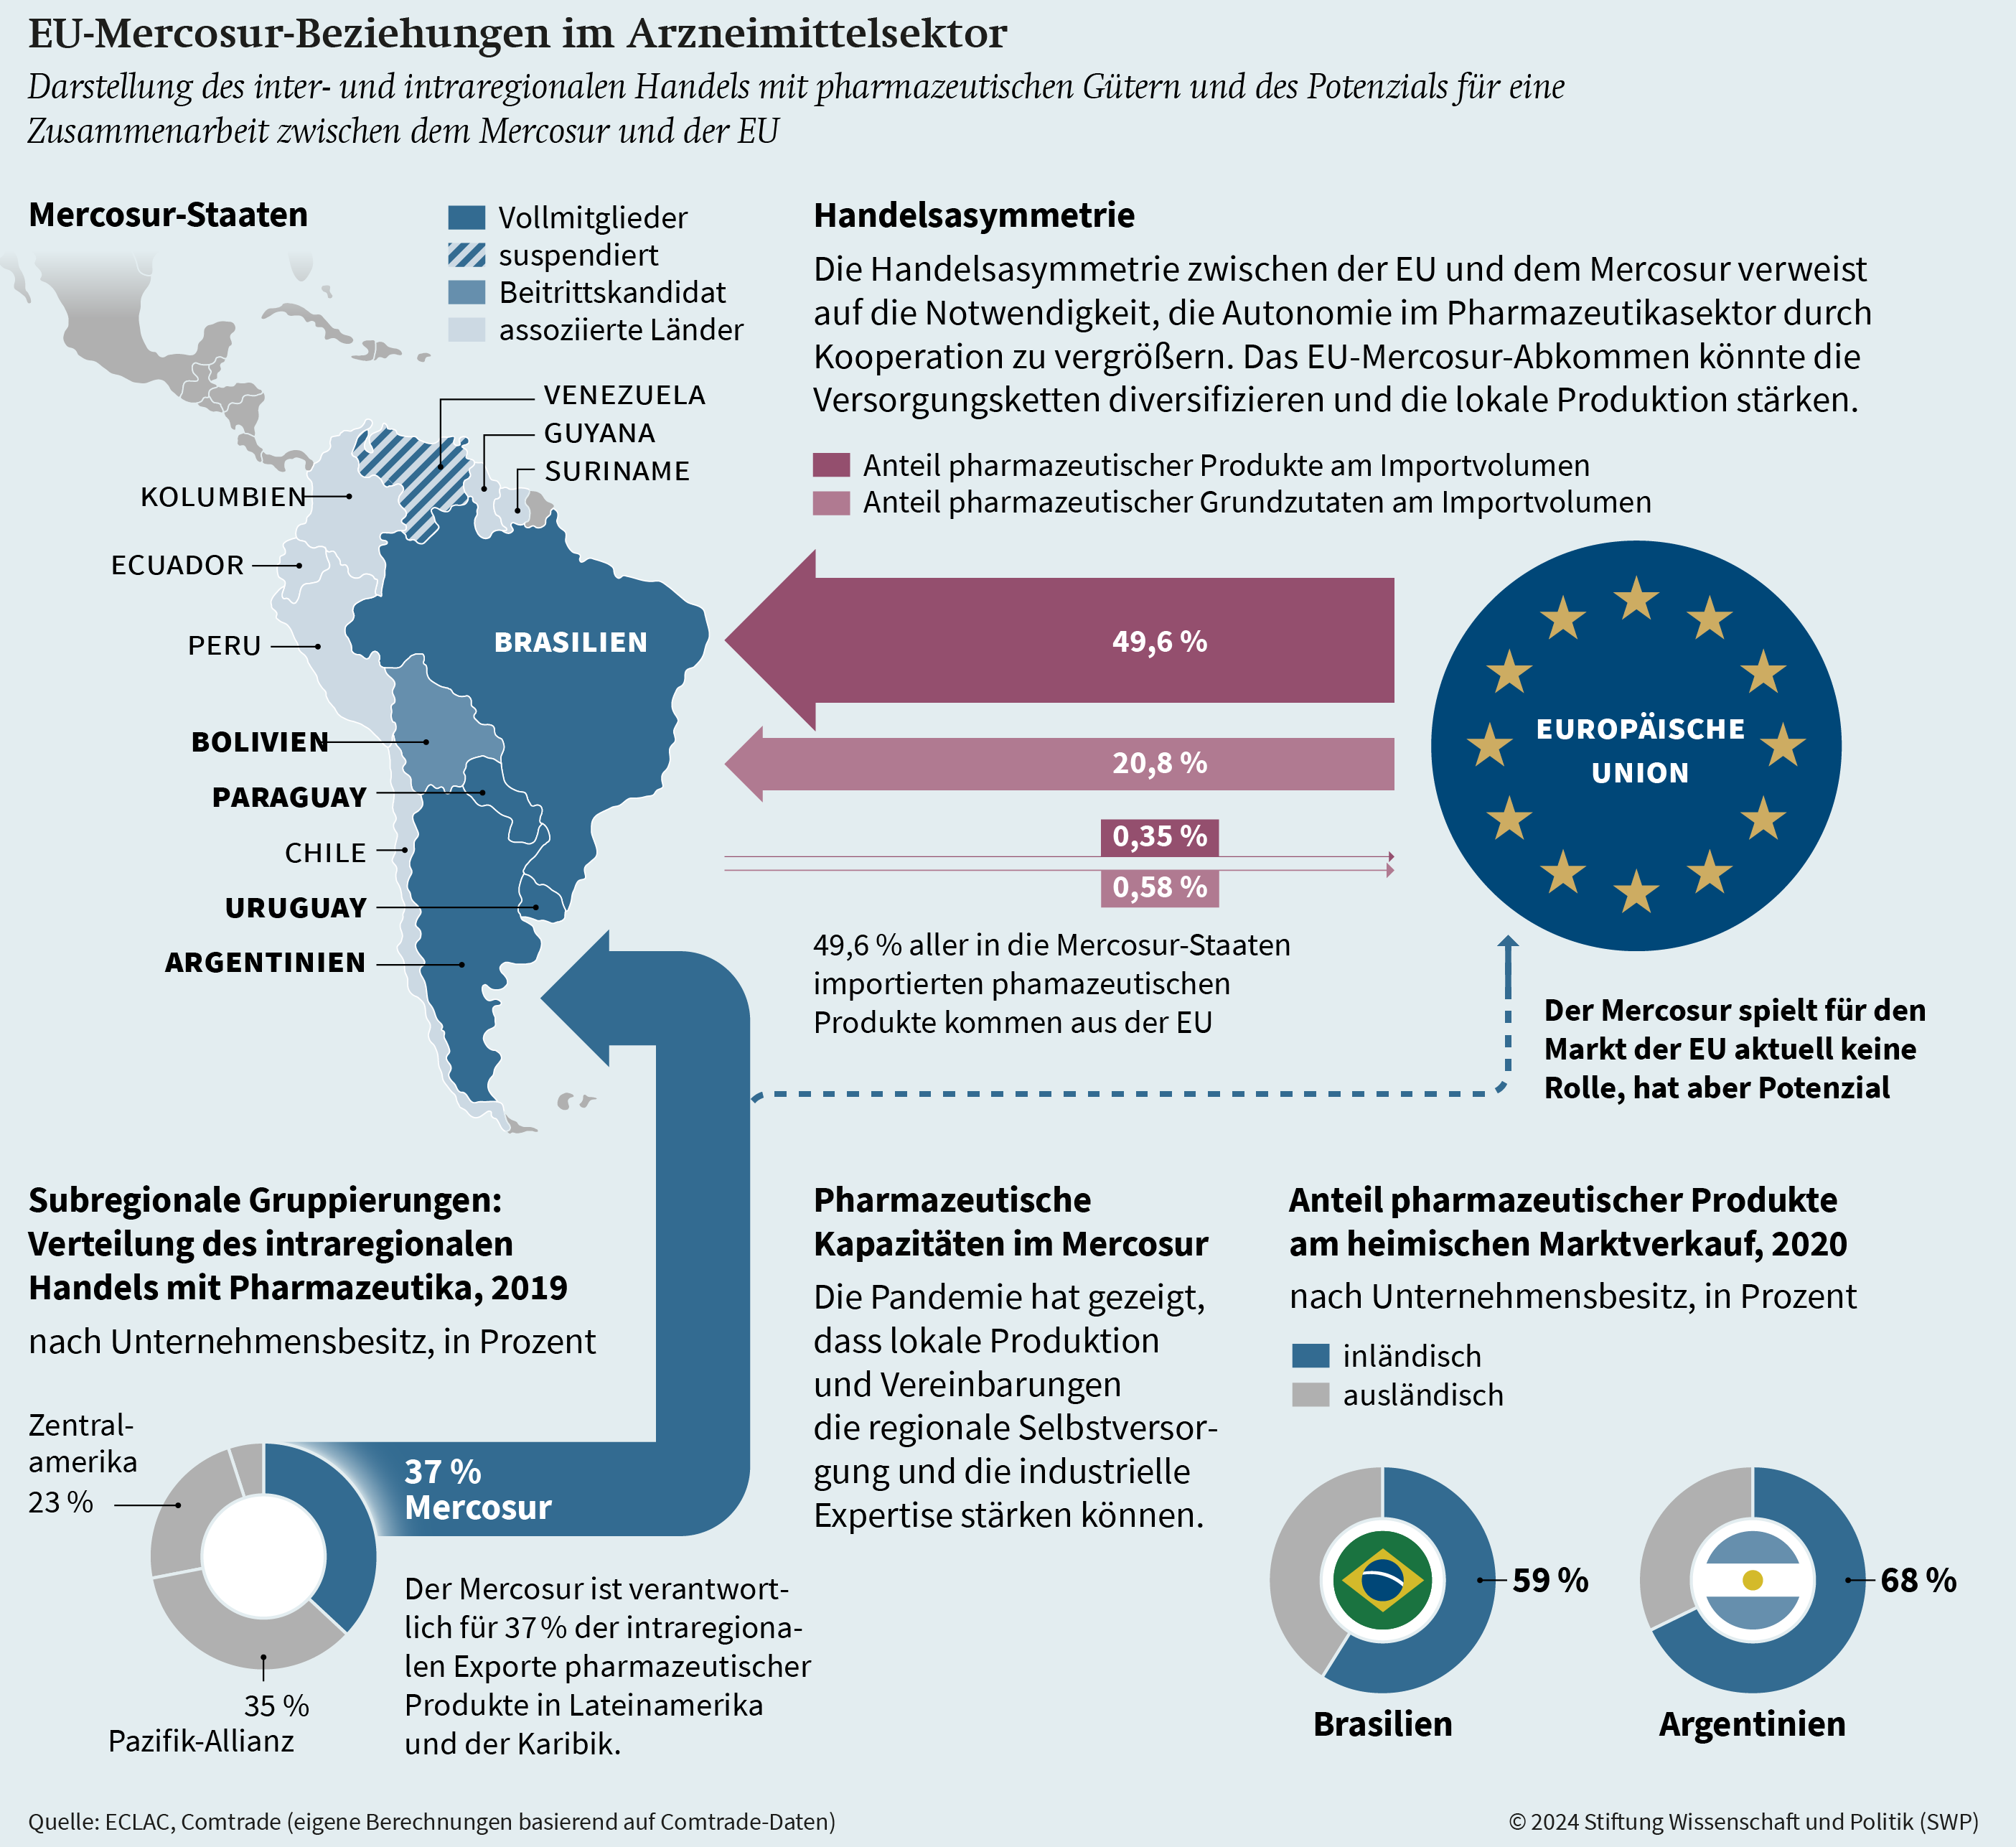 Abbildung: EU-Mercosur-Beziehungen im Arzneimittelsektor